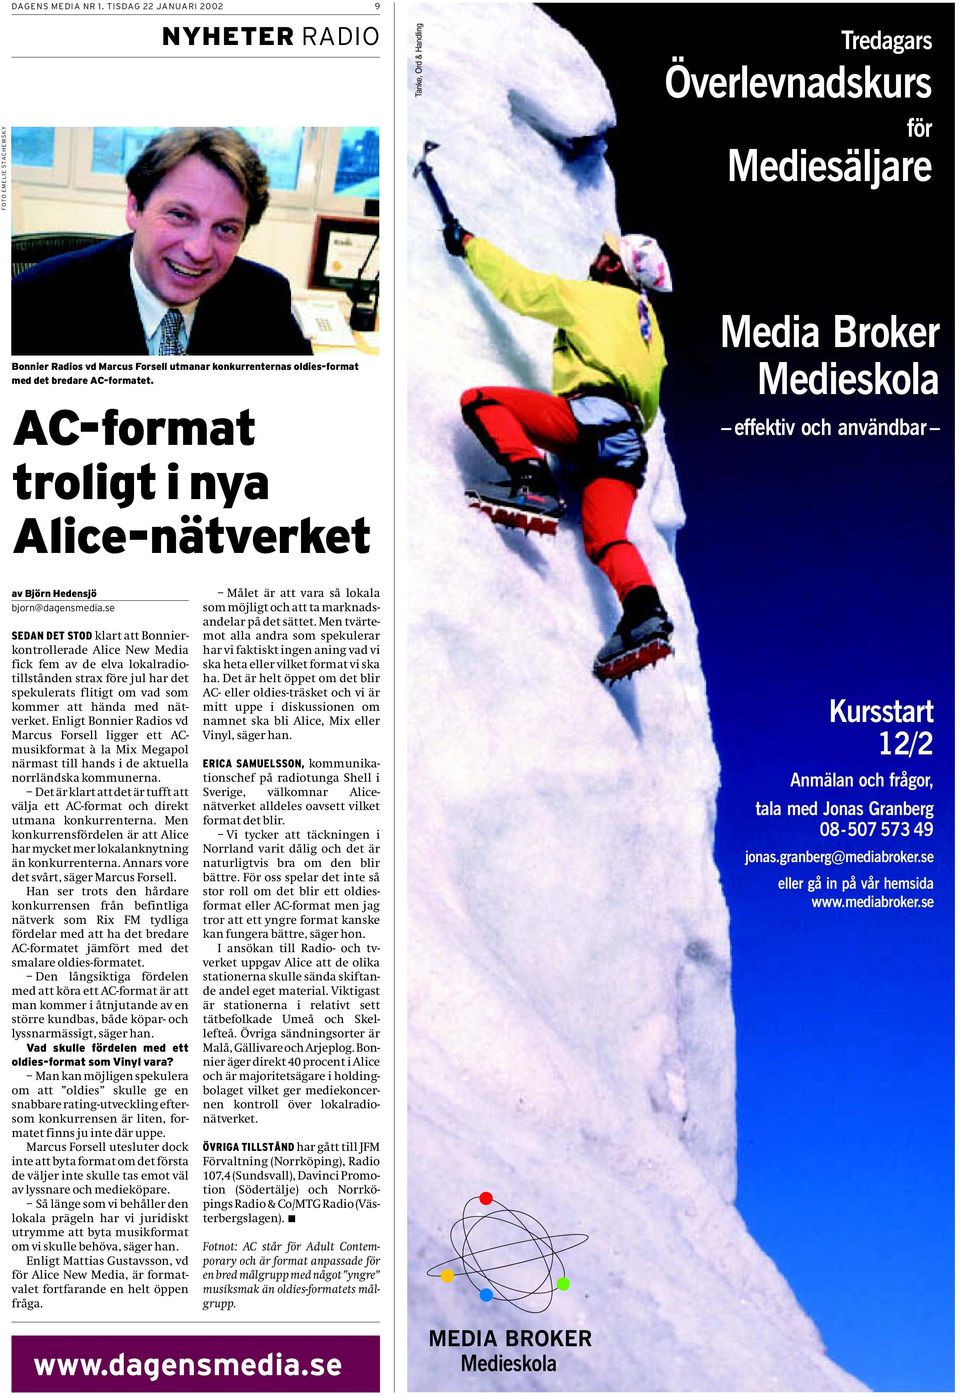 AC-formatet. AC-format troligt i nya Alice-nätverket Media Broker Medieskola effektiv och användbar av Björn Hedensjö bjorn@dagensmedia.